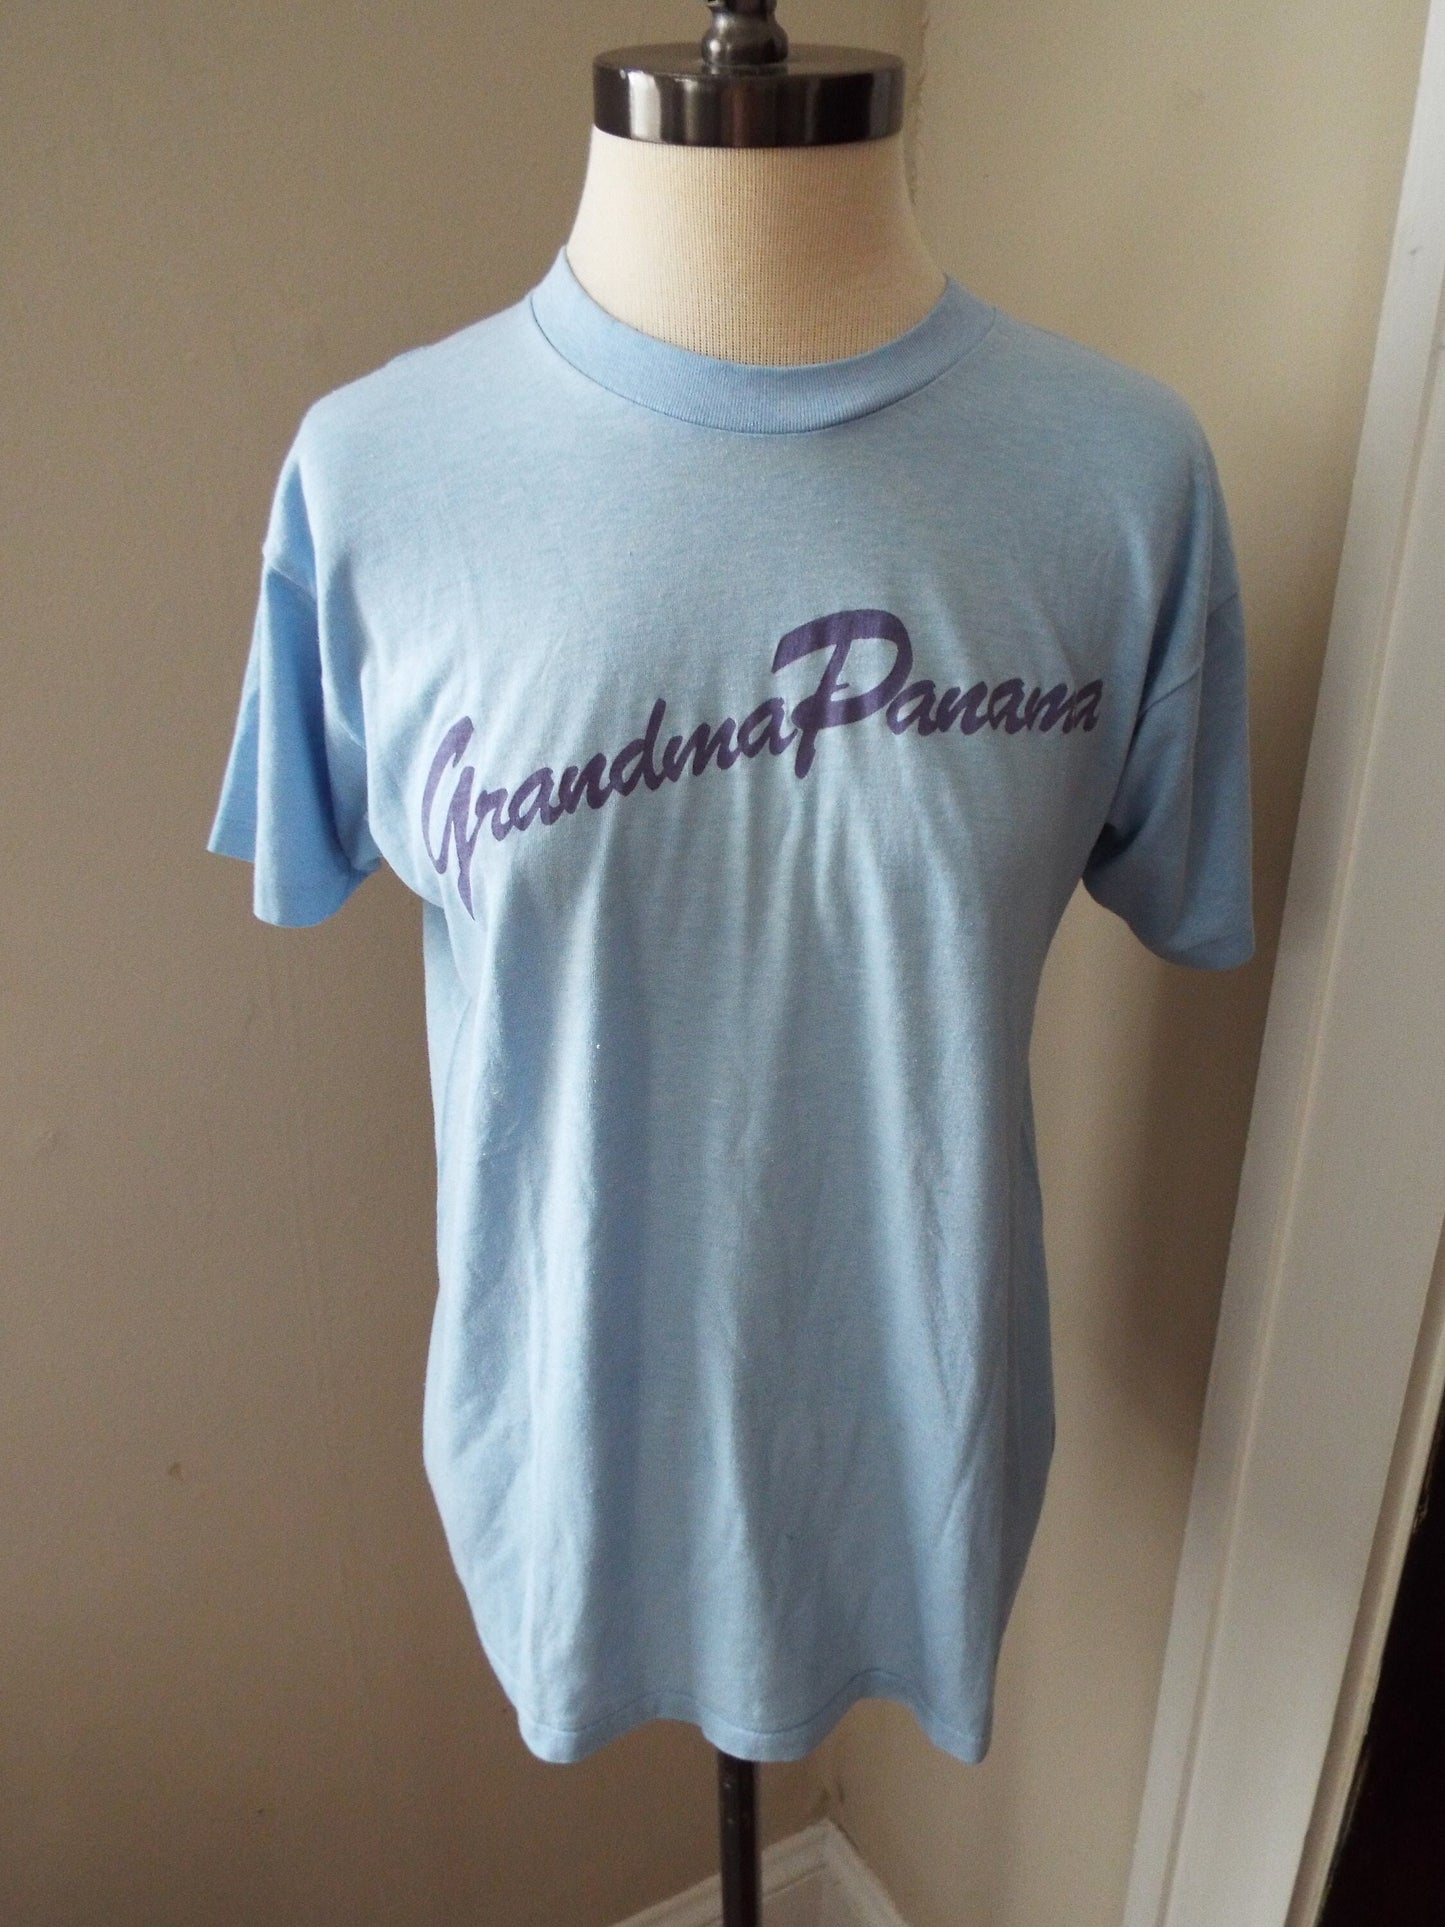 Vintage Grandma Panama T Shirt by 5050